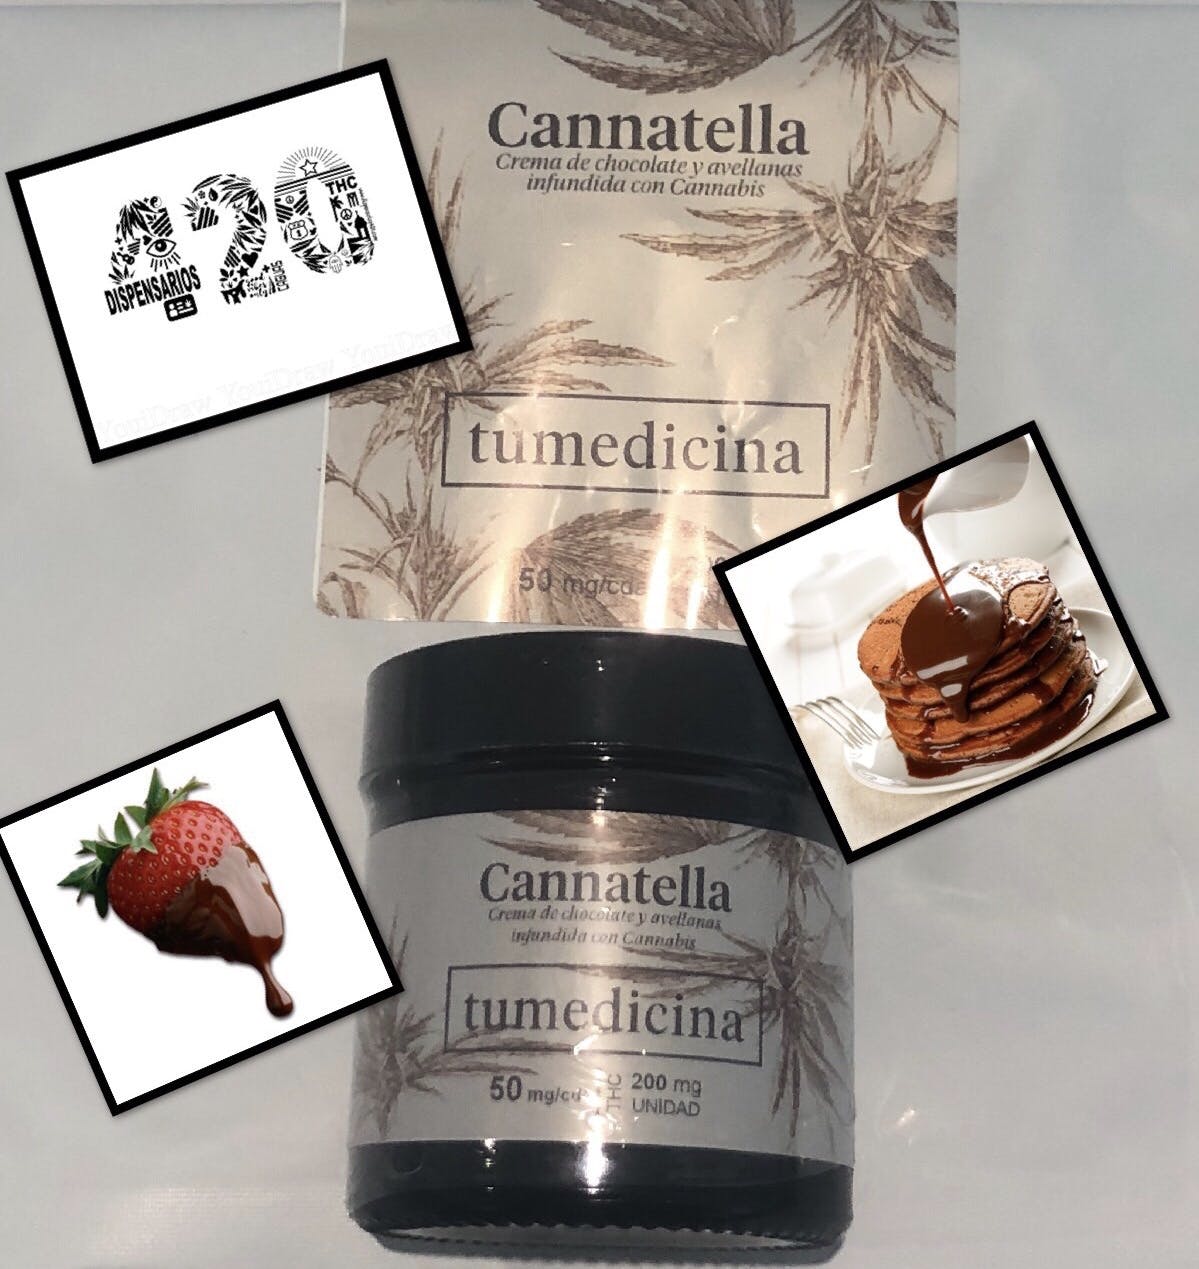 edible-cannatella-50-mgcda-200-mg-unidad-2435-00